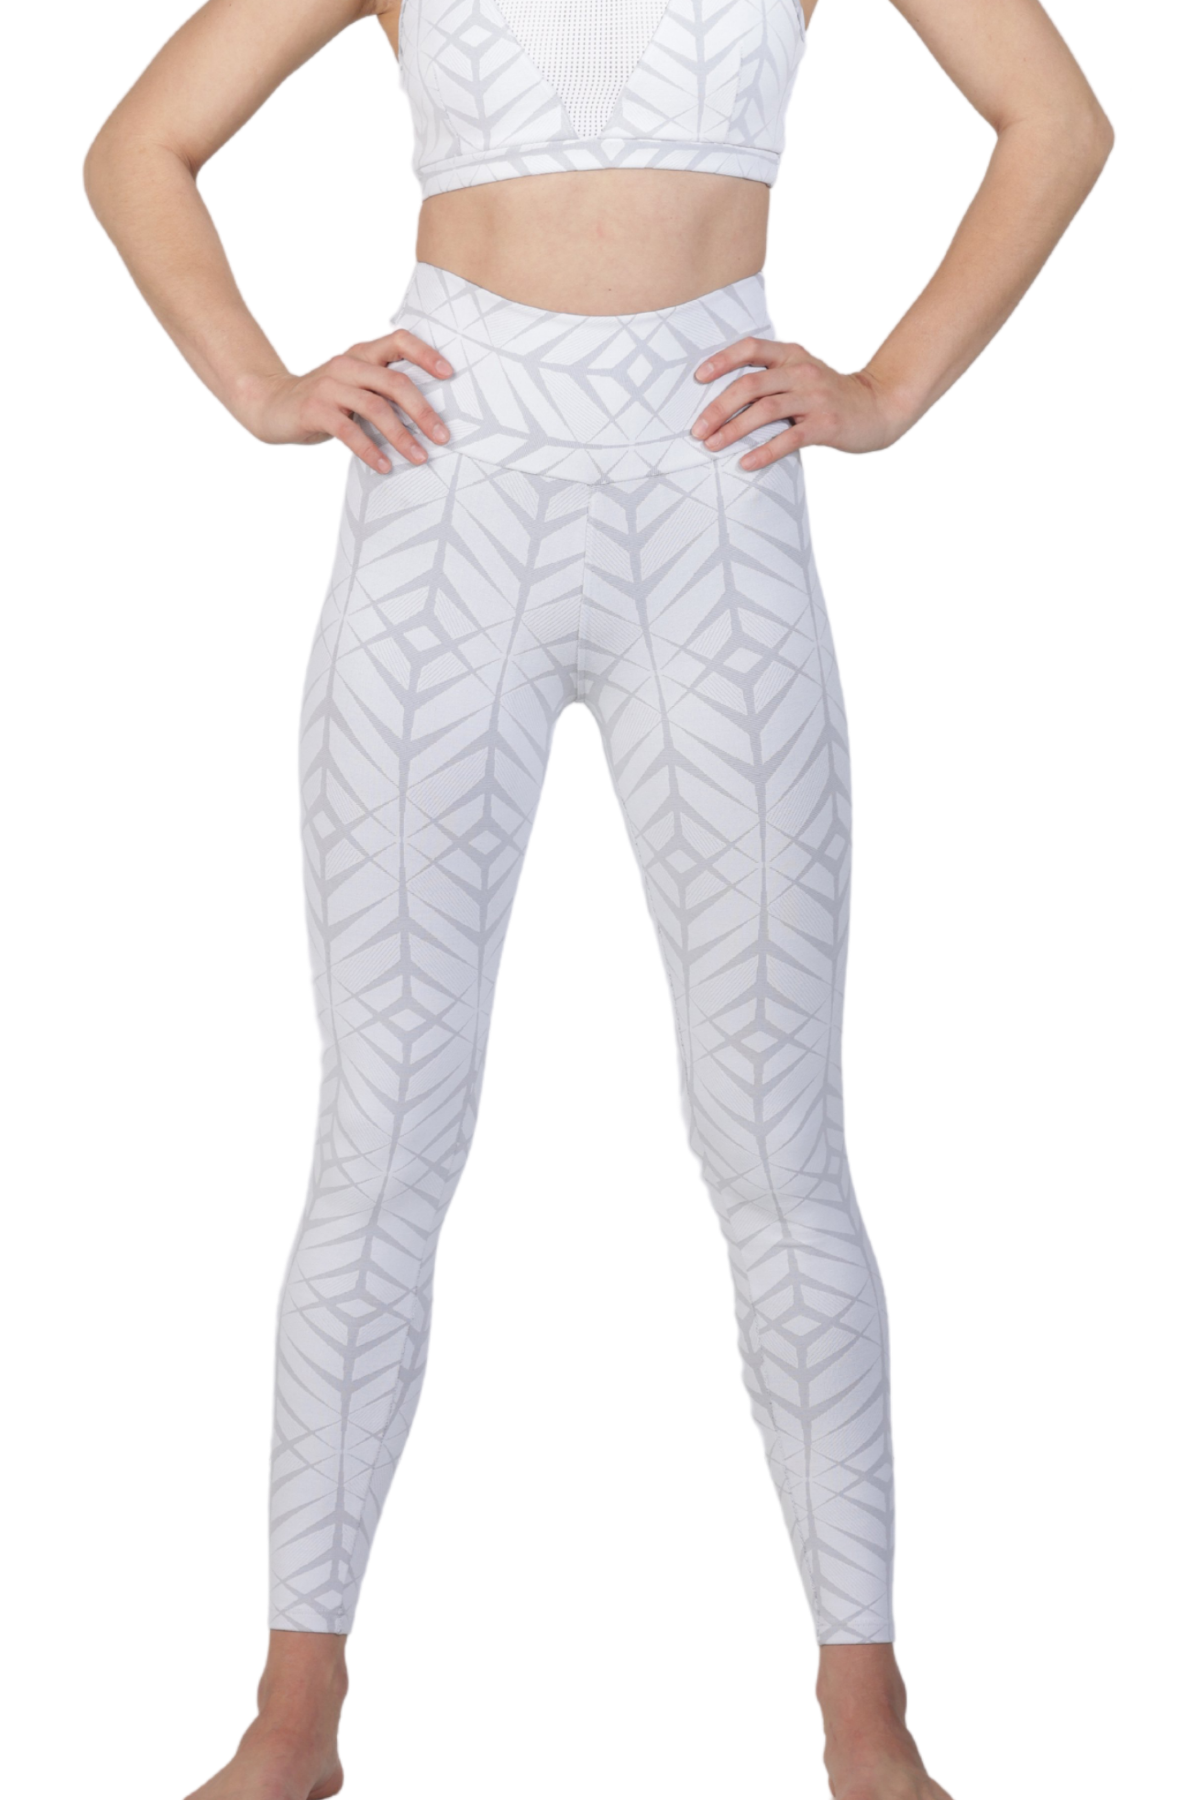 white jacquard high waist long legging activewear